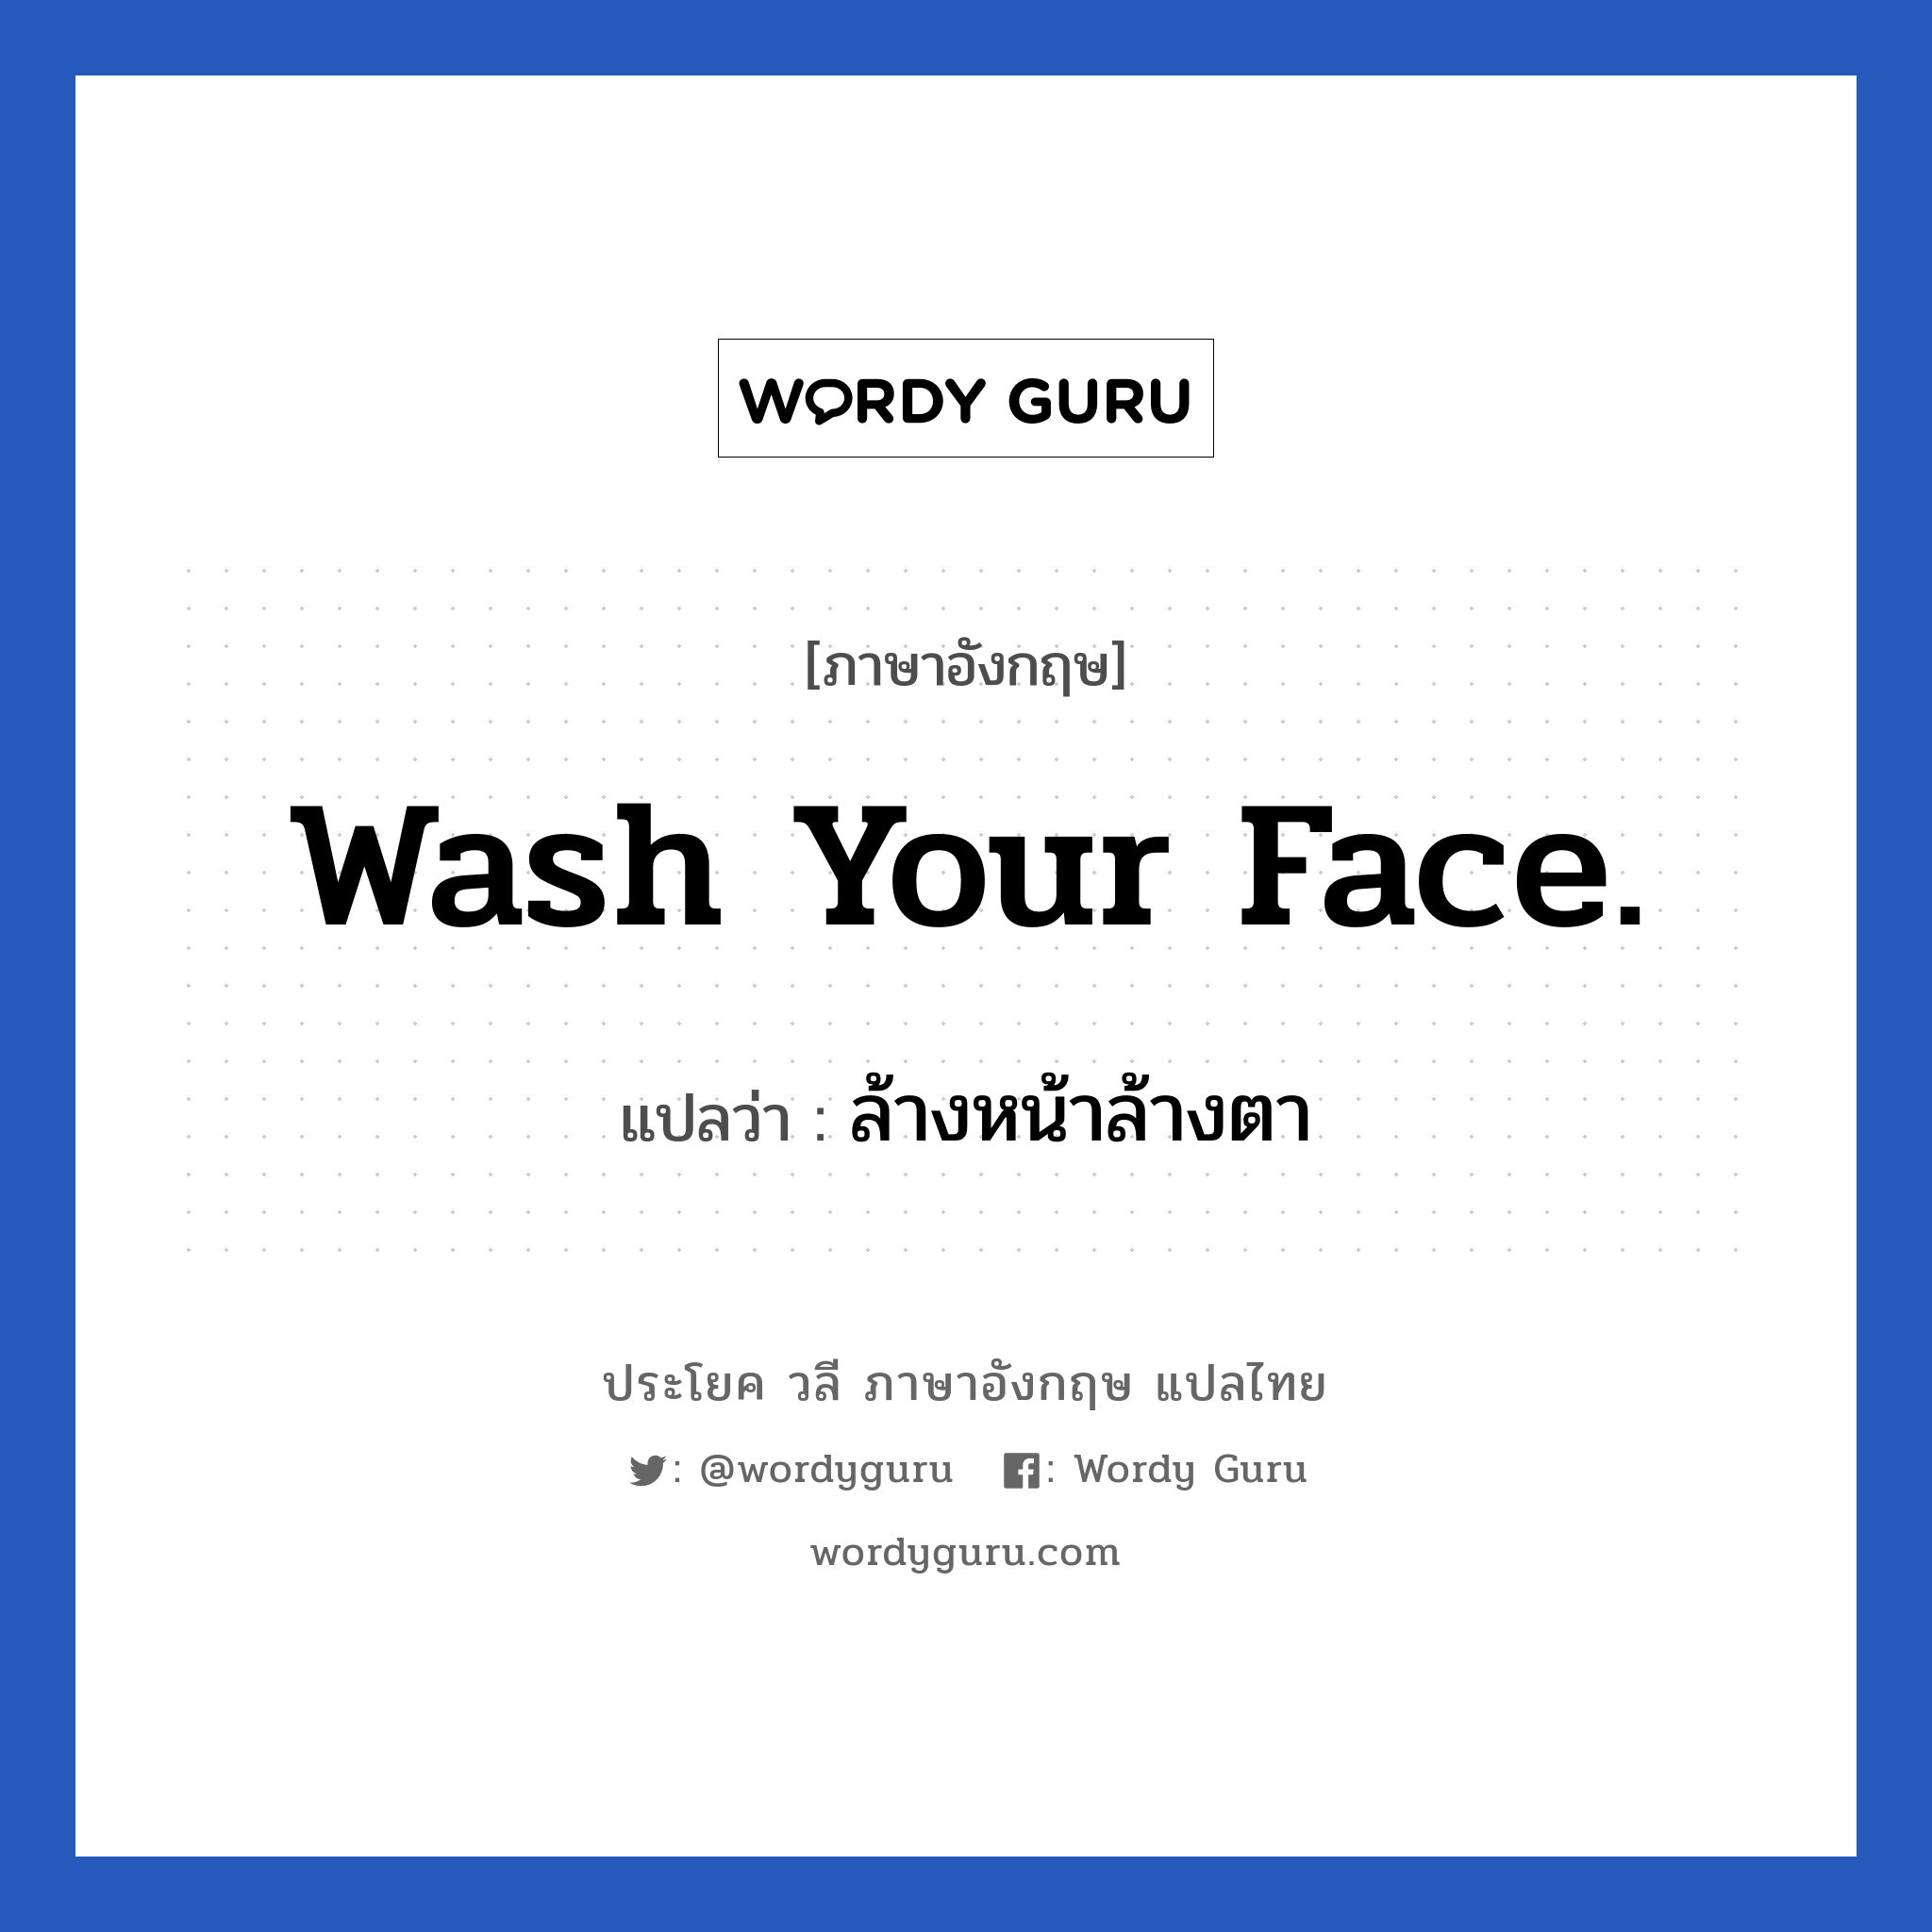 ล้างหน้าล้างตา ภาษาอังกฤษ?, วลีภาษาอังกฤษ ล้างหน้าล้างตา แปลว่า Wash your face.